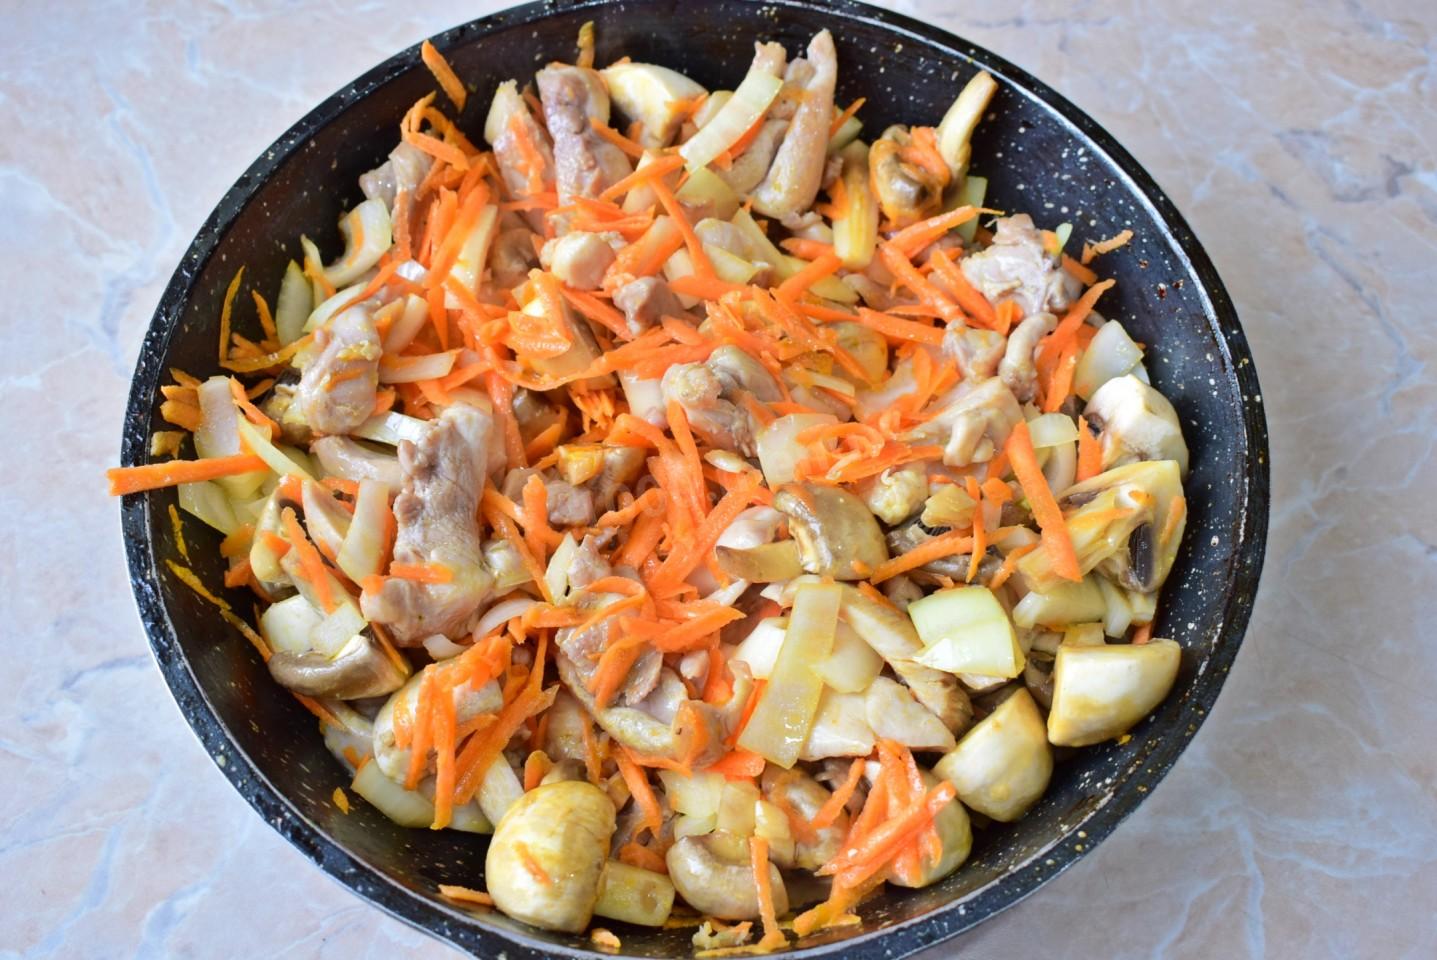 В сковороде с толстым дном разогрейте растительное масло. Отправьте курицу, морковку, лук и шампиньоны в сковороду. Обжарьте мясо, овощи и грибы, постоянно помешивая, около 5-7 минут. 